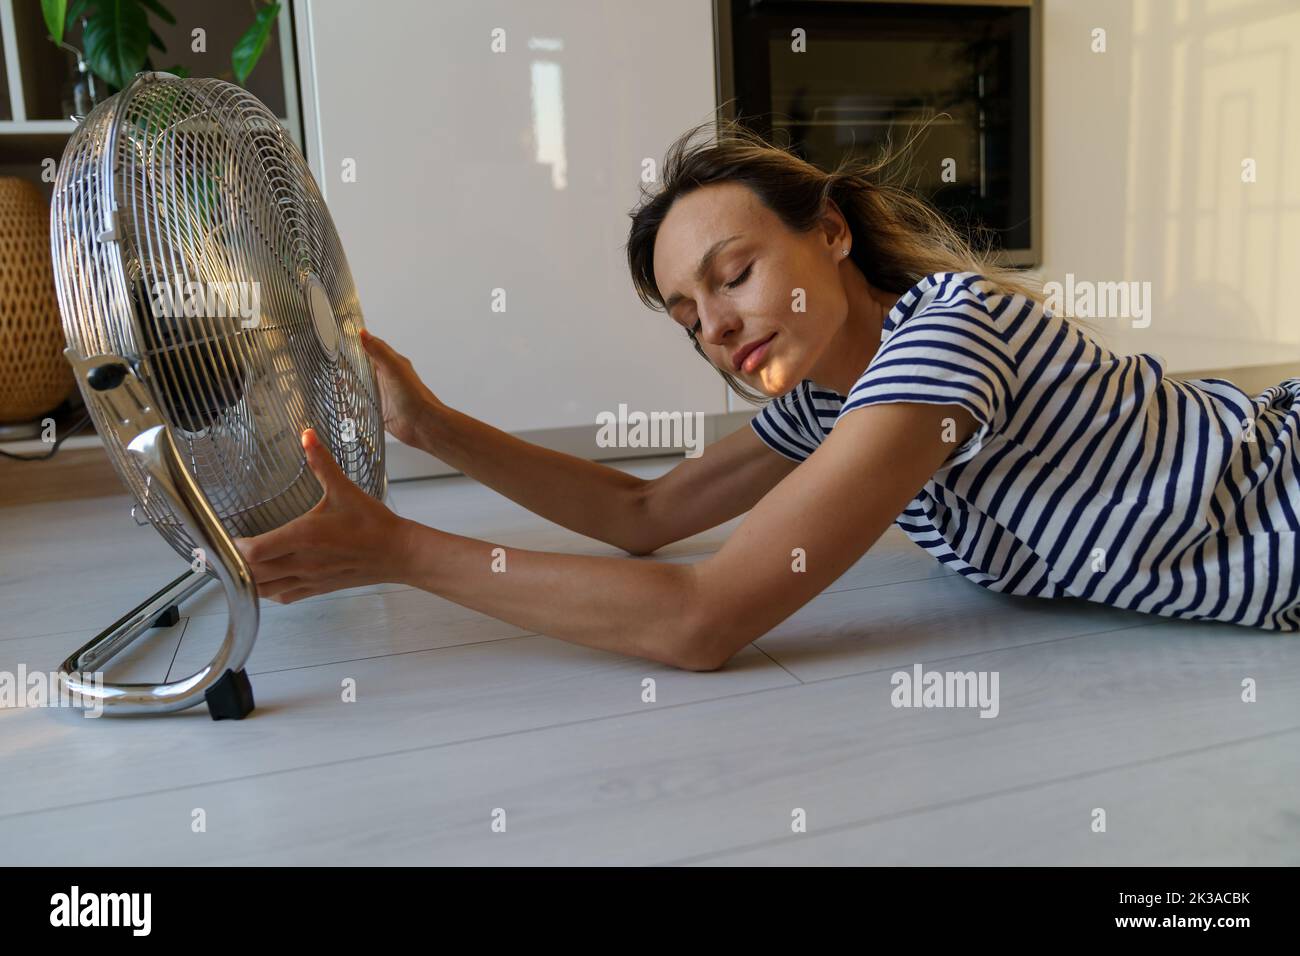 Mujer sudorosa acostada en el suelo con la cabeza hacia el dispositivo sostiene el ventilador e intenta atrapar la corriente de aire frío Foto de stock